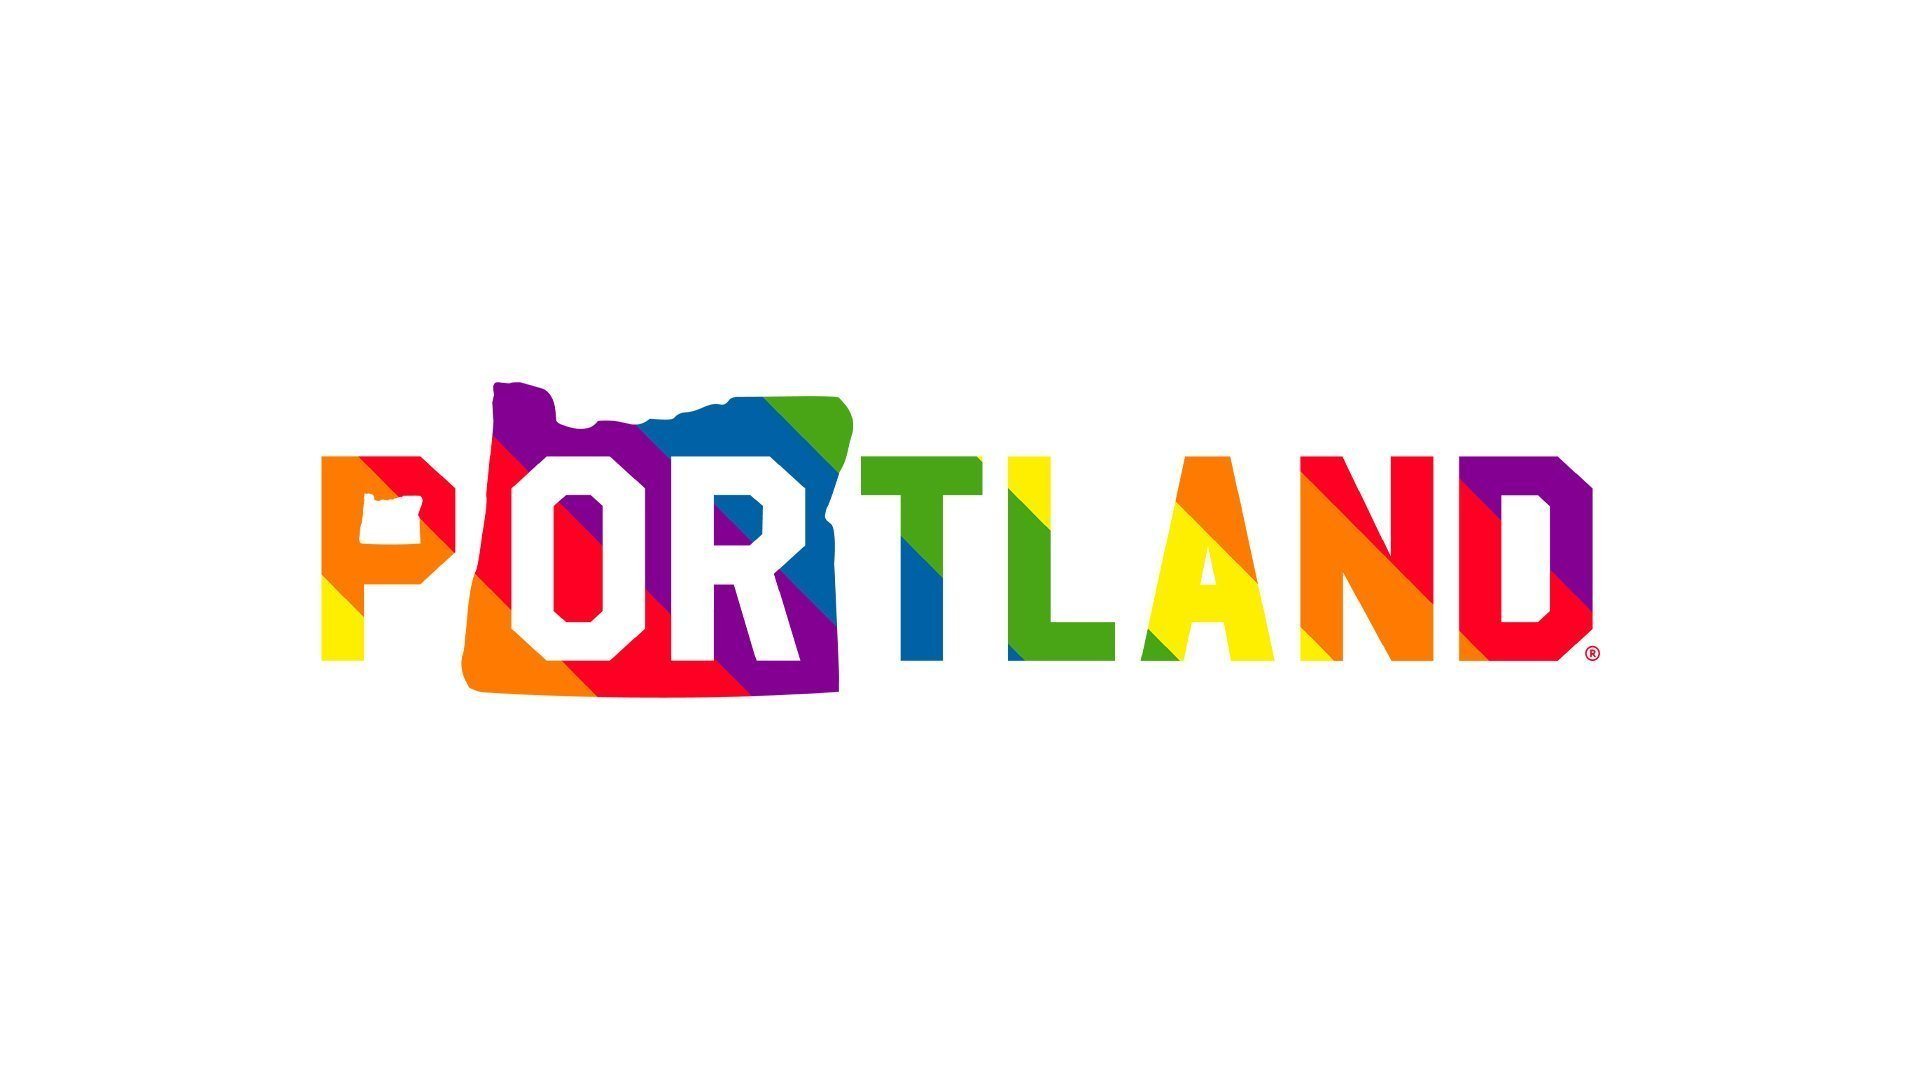 PORTLAND PRIDE 2019 - Portland Gear